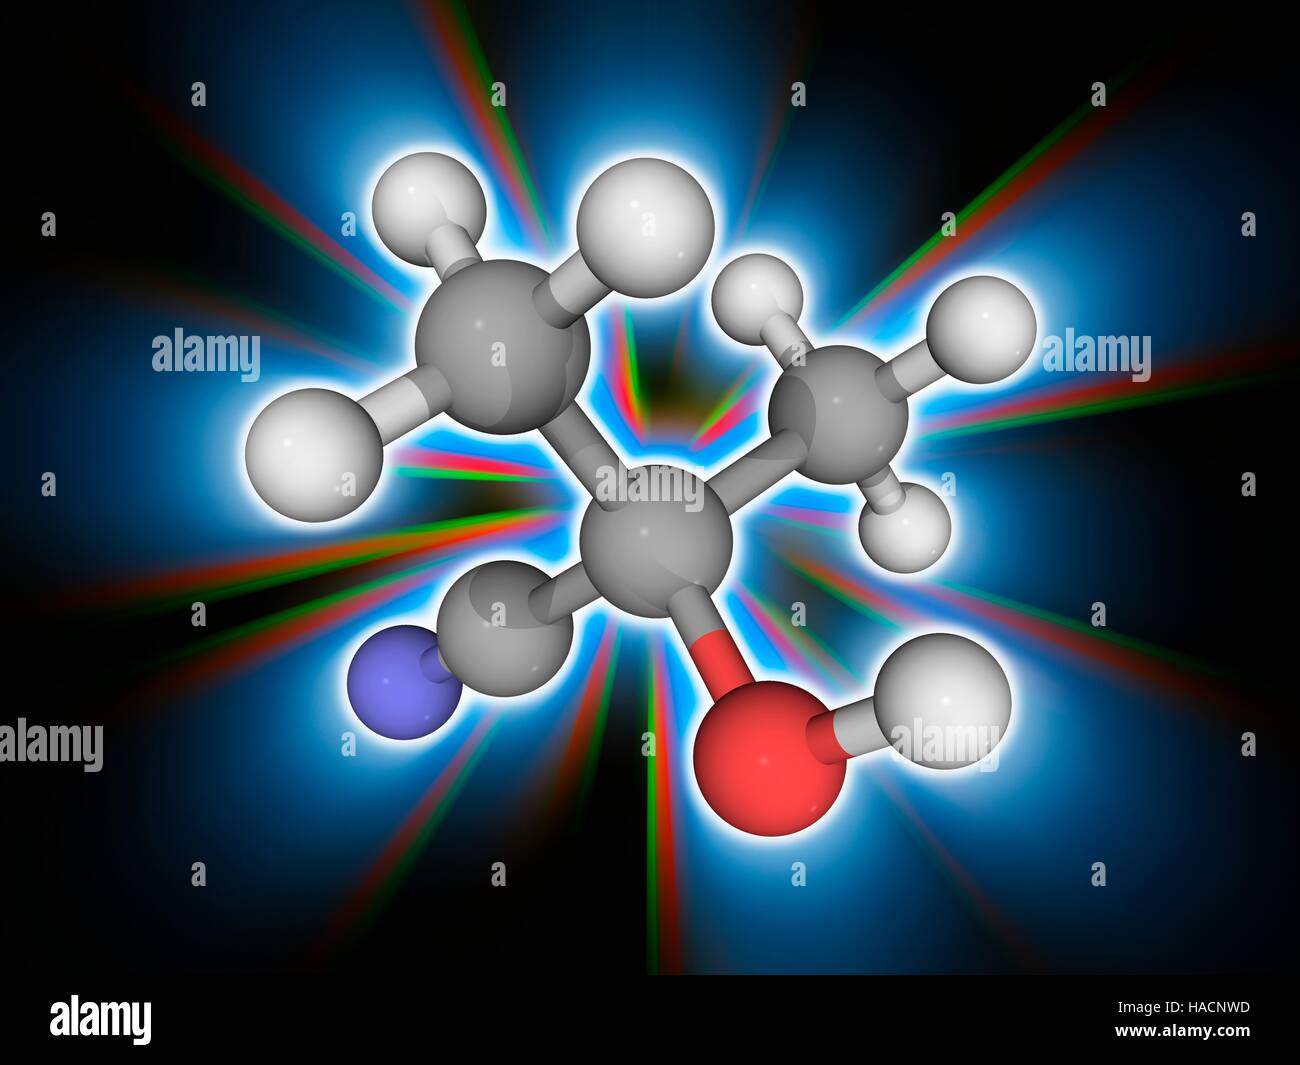 Azeton Cyanohydrin. Molekulares Modell des organischen Verbindung Azeton Cyanohydrin (C4. H7. NAVI). Diese organische Verbindung wird bei der Herstellung von Kunststoffen wie Acryl verwendet. Atome als Kugeln dargestellt werden und sind farblich gekennzeichnet: Kohlenstoff (grau), Wasserstoff (weiß), Stickstoff (blau) und Sauerstoff (rot). Abbildung. Stockfoto